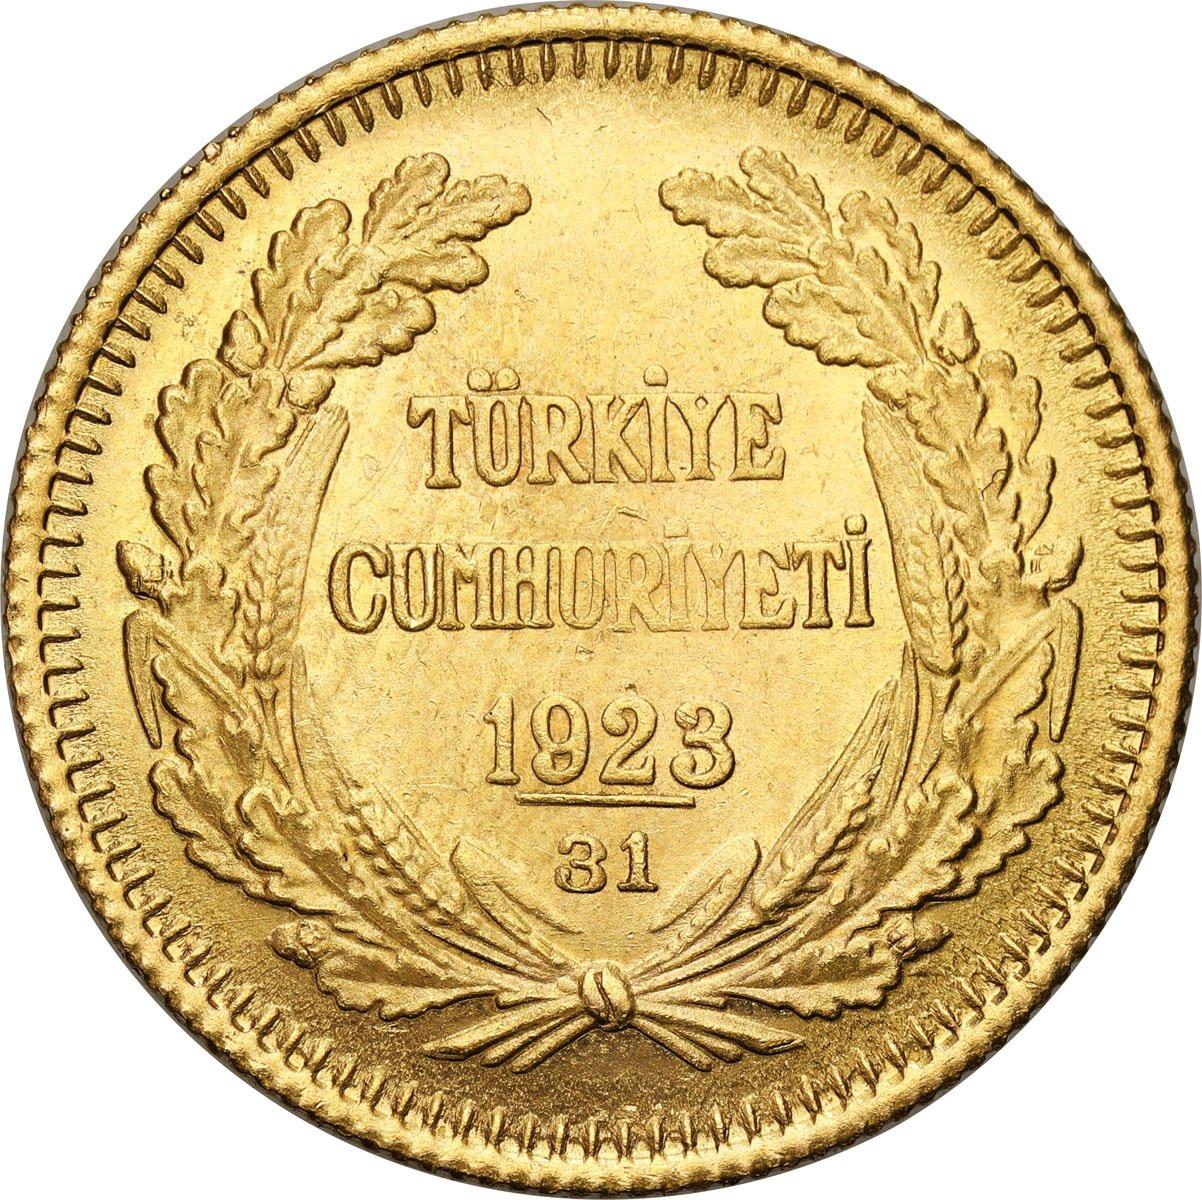 Turcja. 100 piastrów 1954 (1923 + 31)